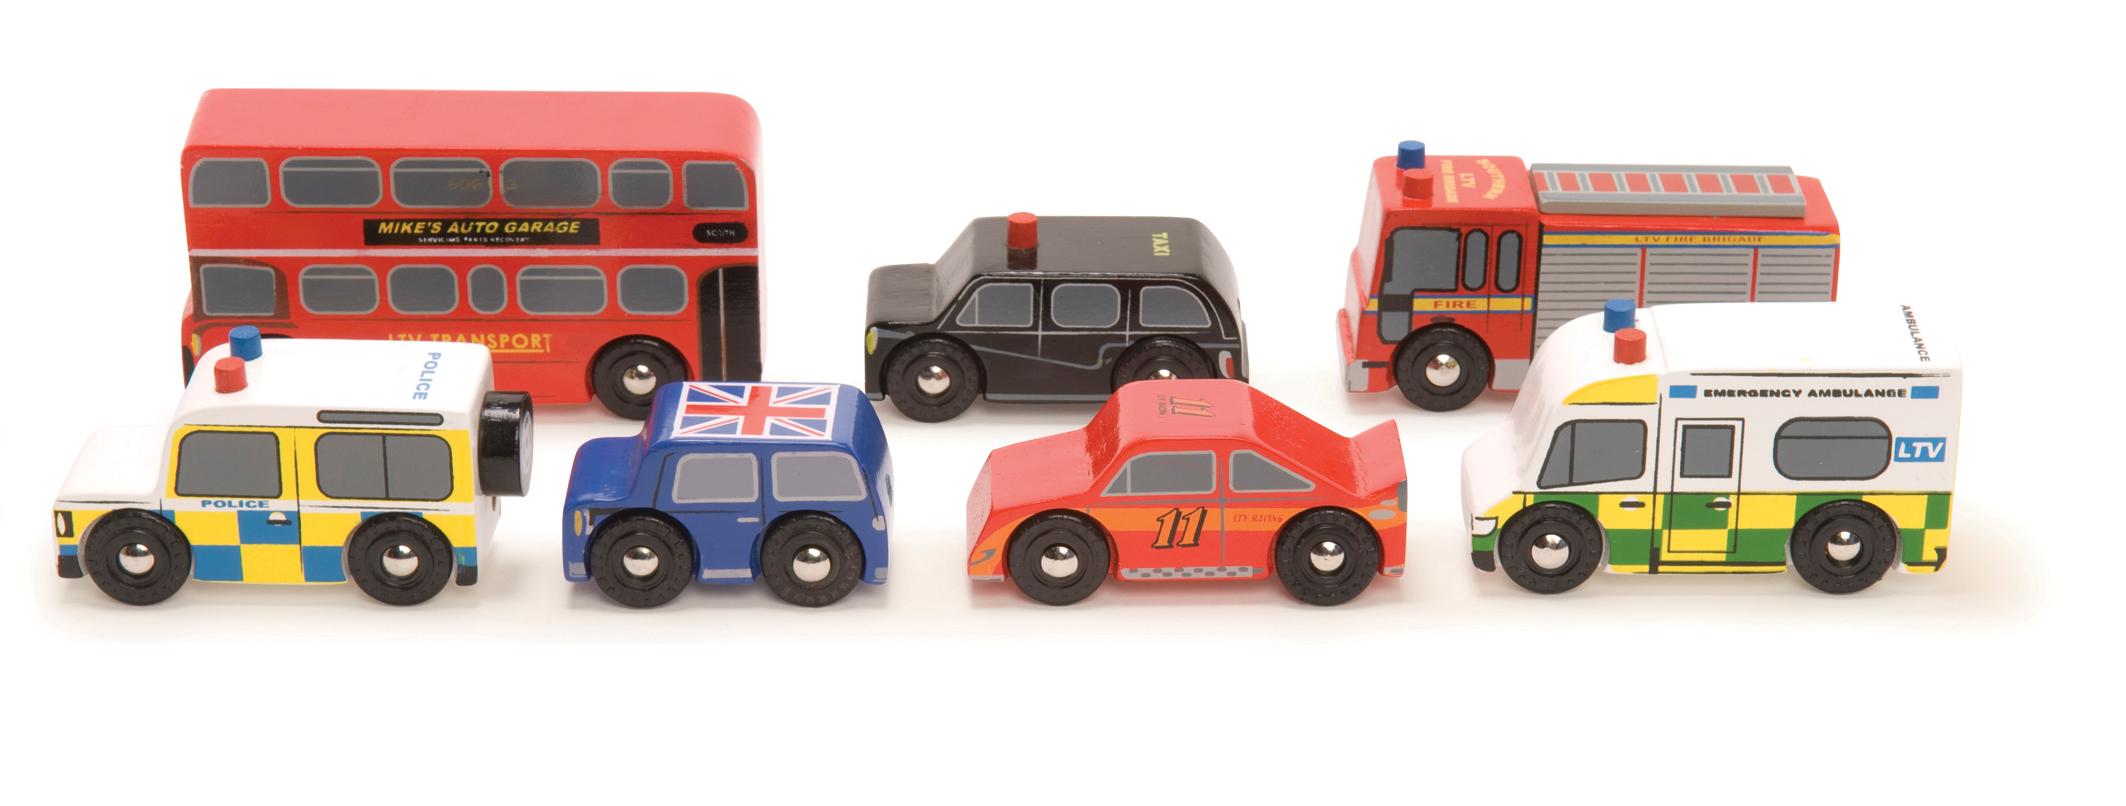 Foto Le Toy Van London Car Set